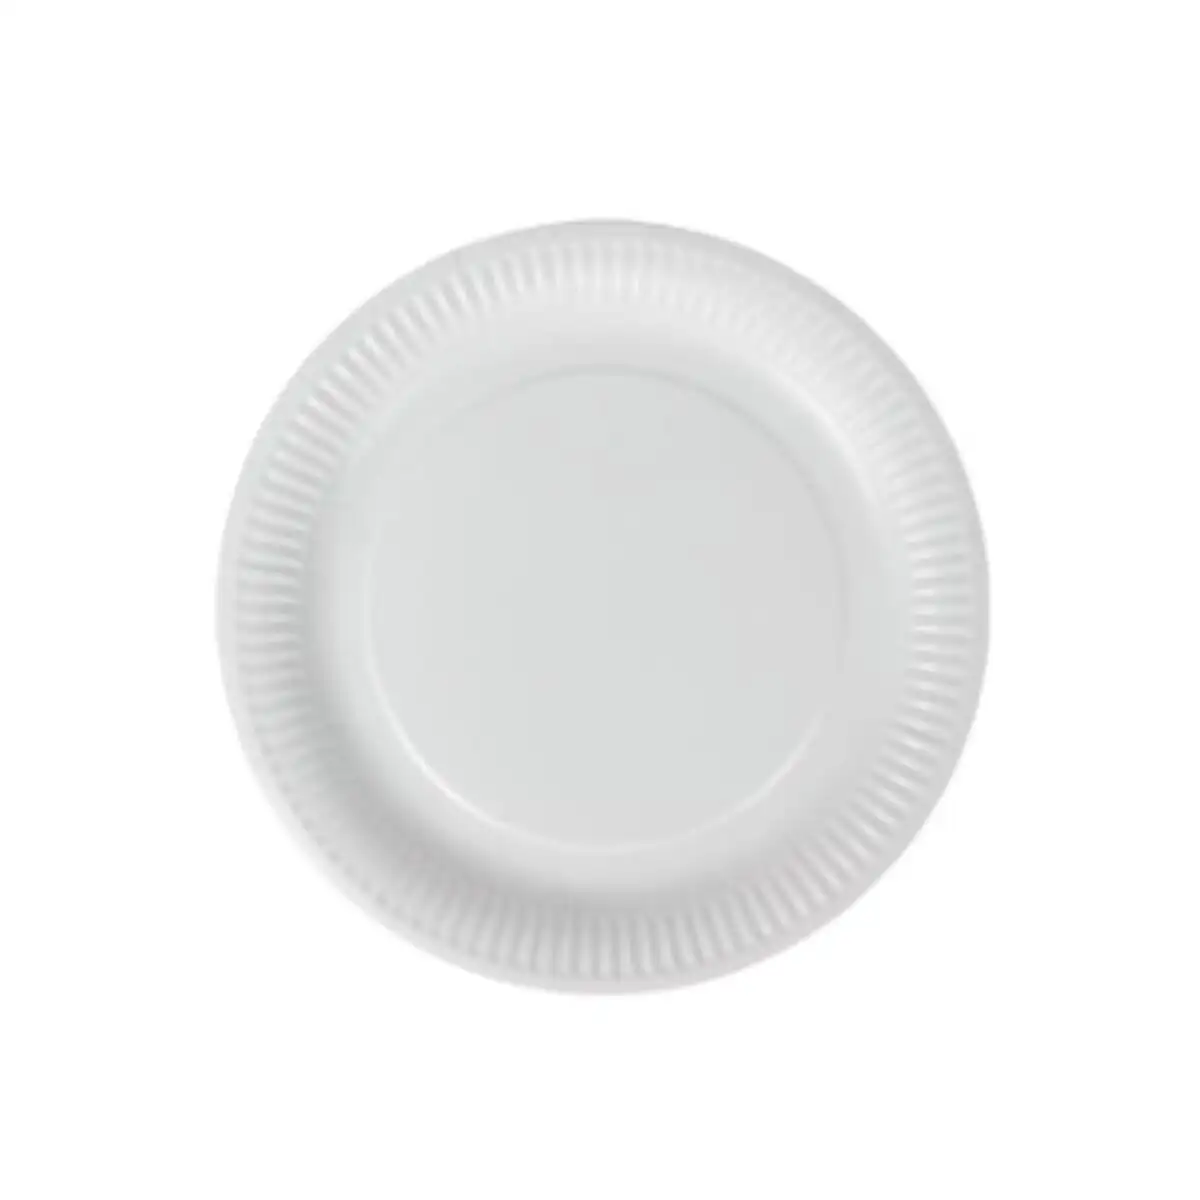 Service de vaisselle algon rond blanc carton produits a usage unique 18 cm 25 unites_9916. DIAYTAR SENEGAL - Où la Qualité et la Diversité Fusionnent. Explorez notre boutique en ligne pour découvrir une gamme variée de produits qui incarnent l'excellence et l'authenticité.